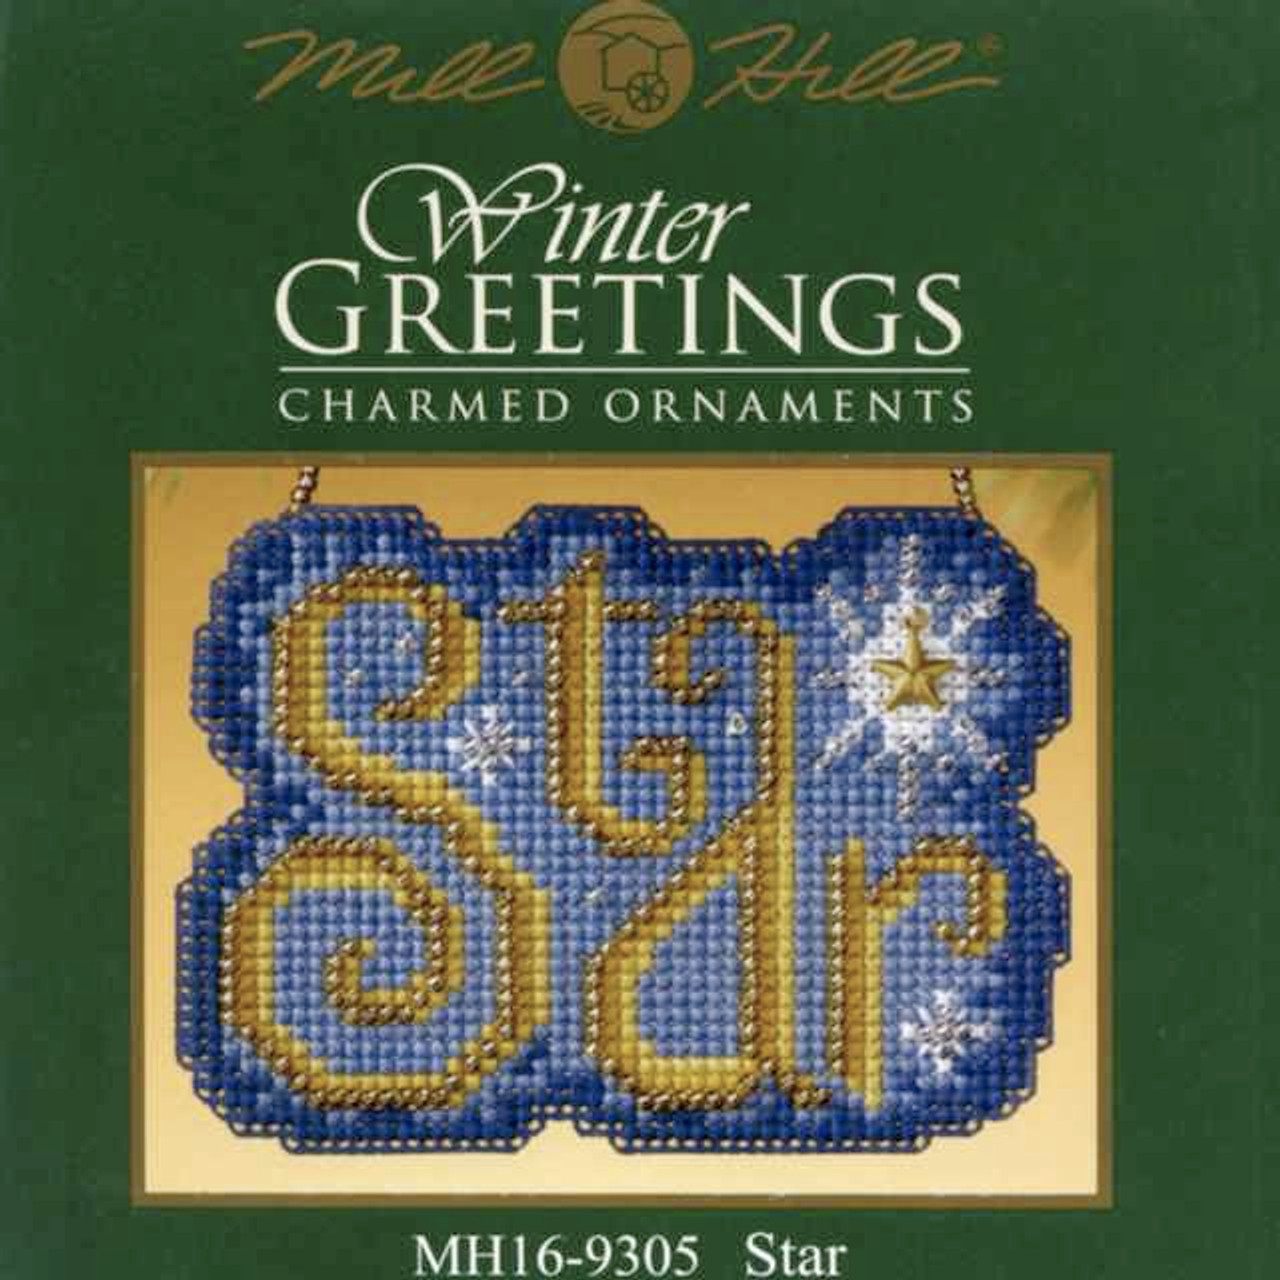 Star Bead Cross Stitch Ornament Kit Mill Hill 2009 Winter Greetings